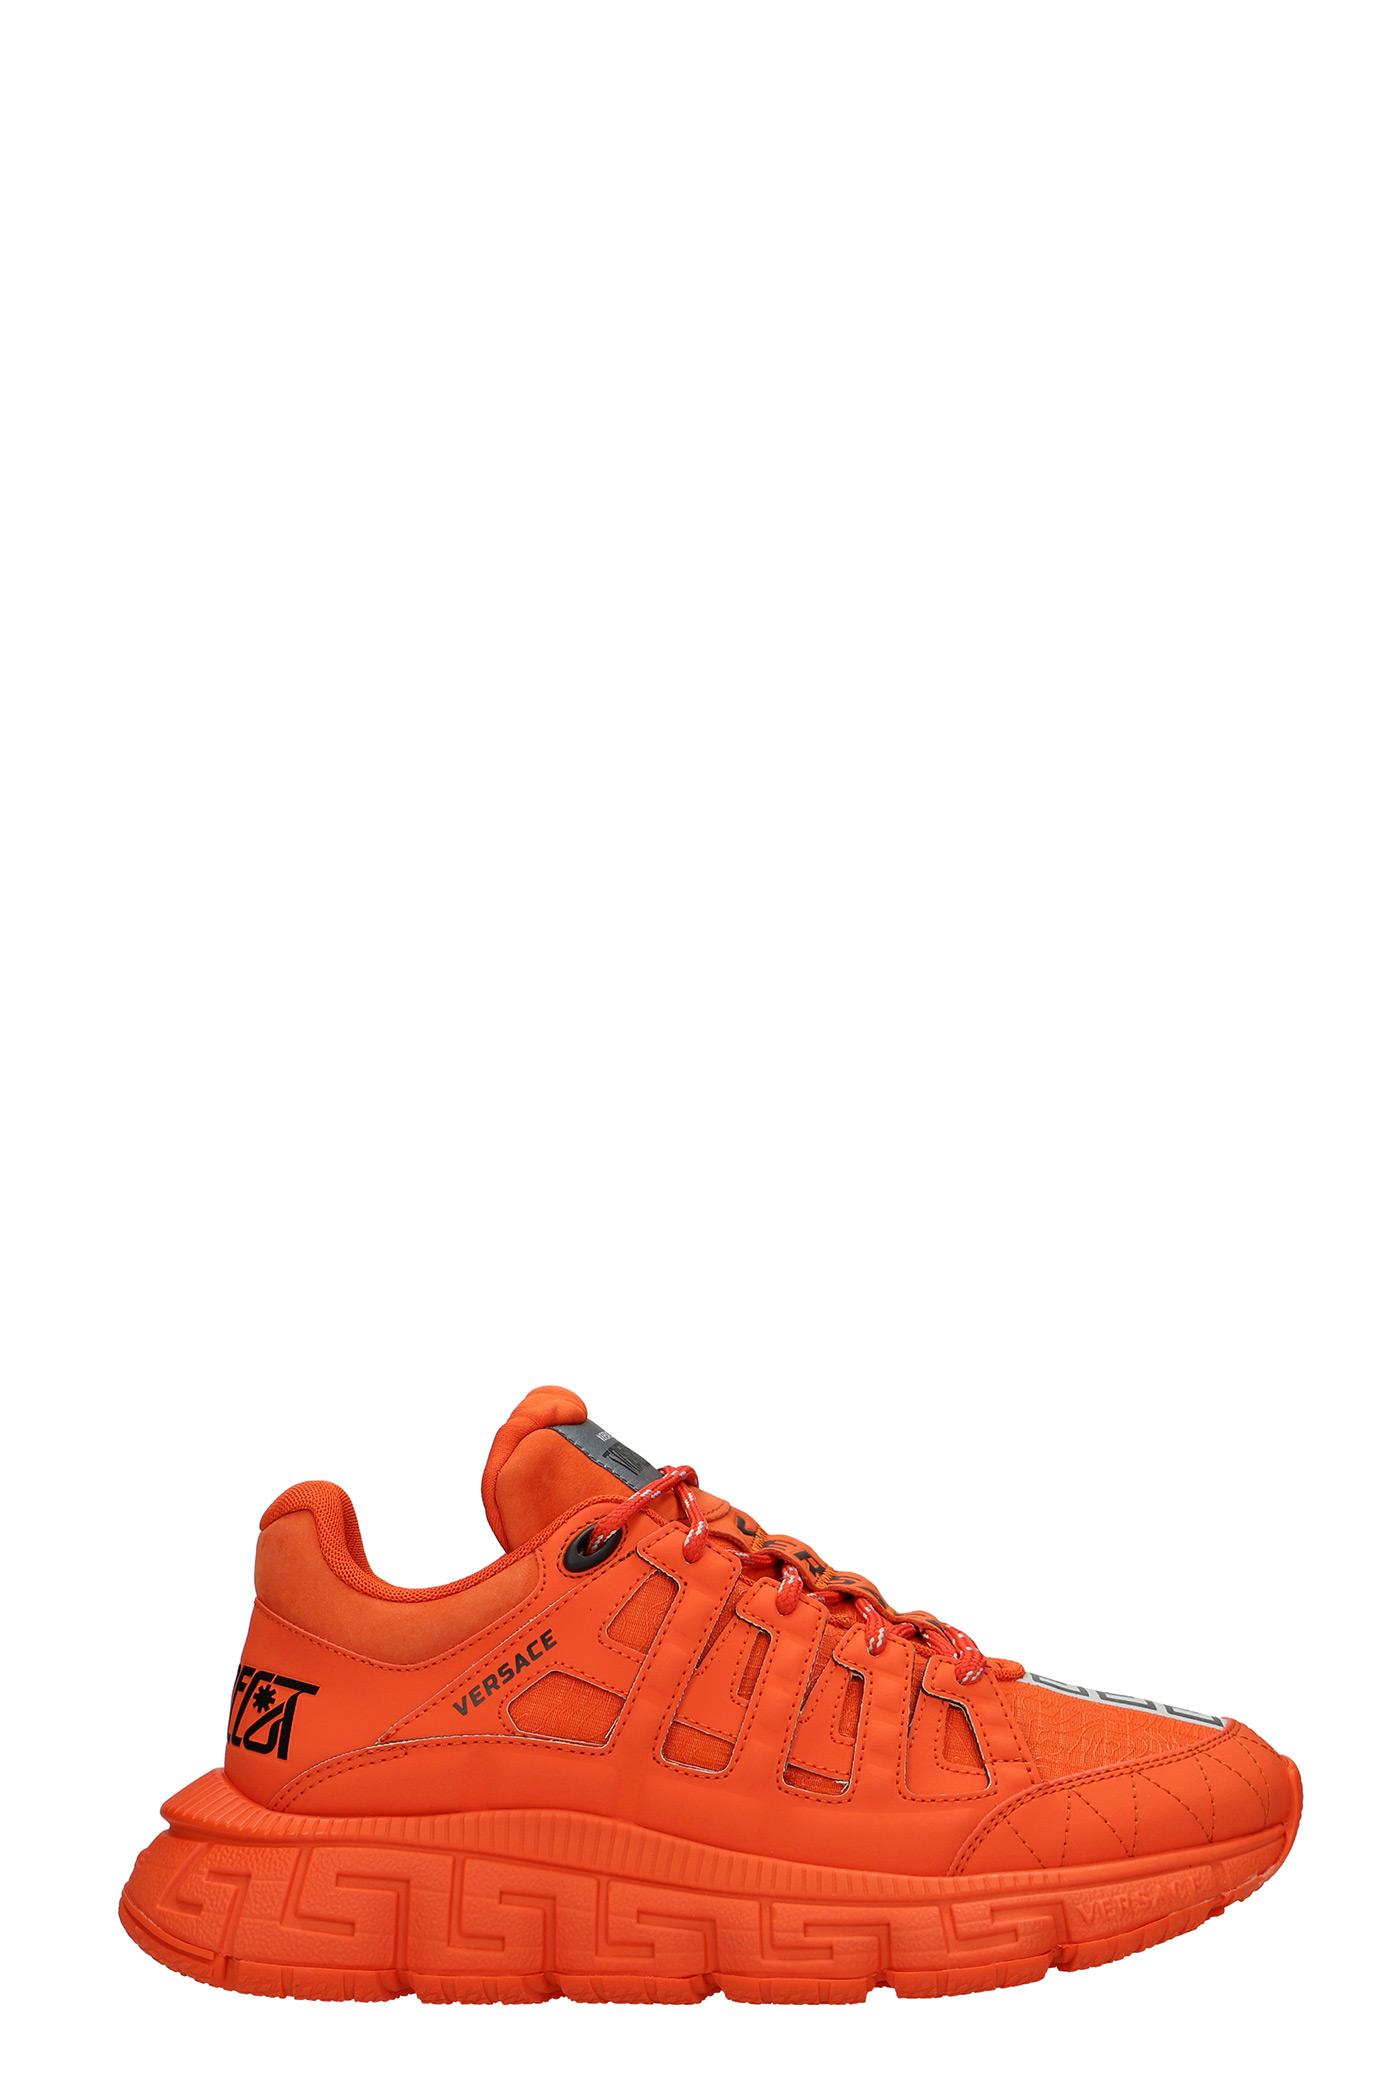 Versace Trigreca Sneakers In Orange Synthetic Fibers for Men | Lyst